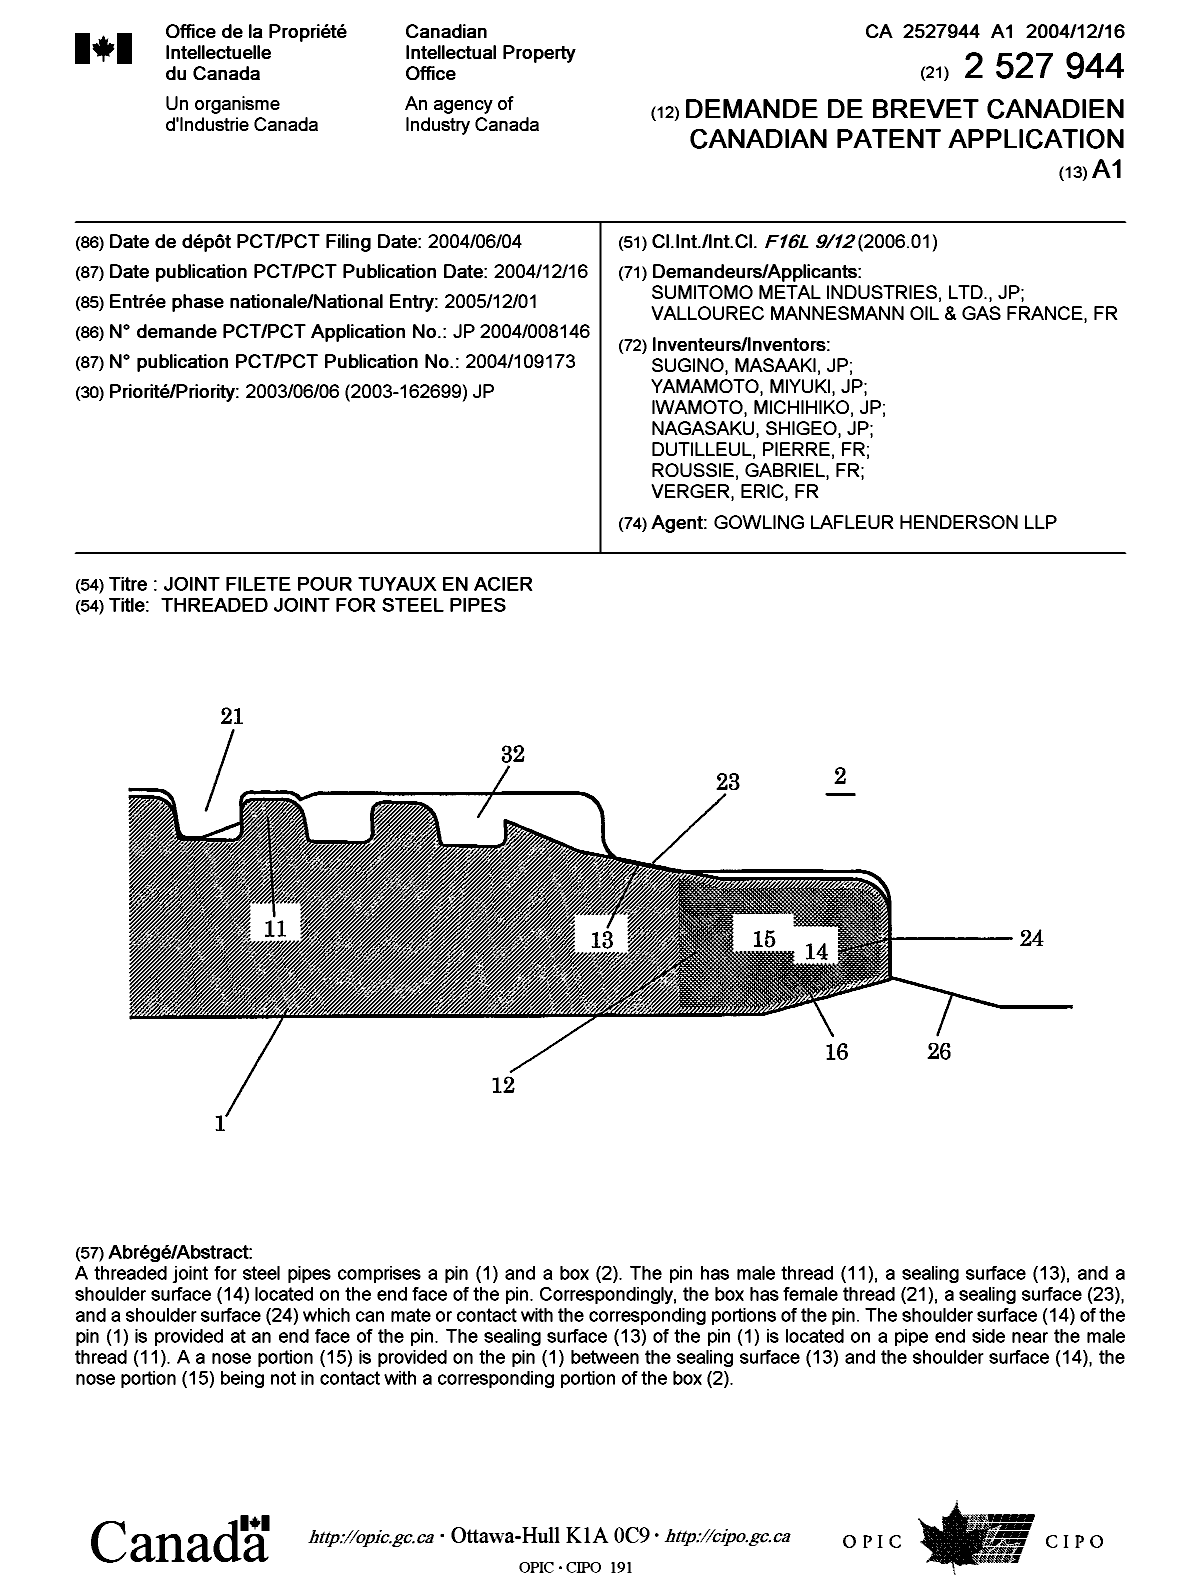 Document de brevet canadien 2527944. Page couverture 20060206. Image 1 de 1